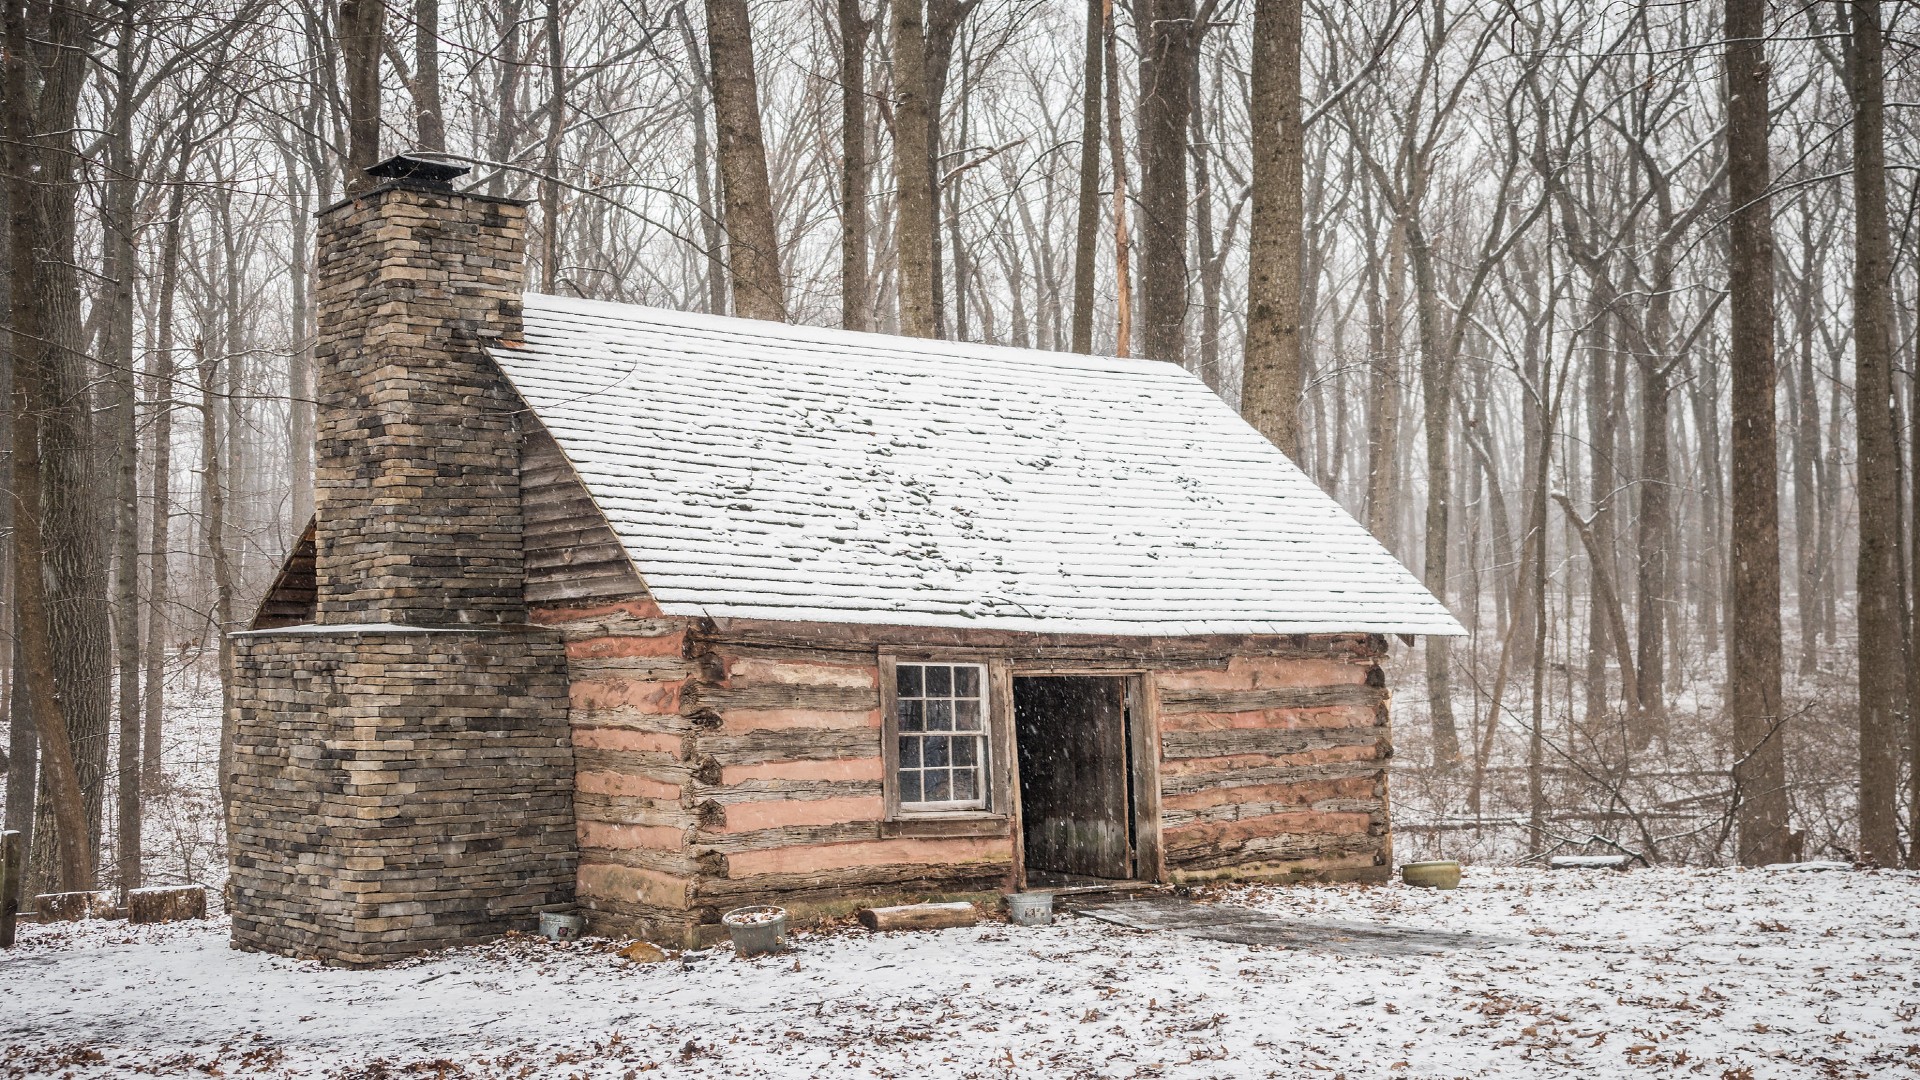 A snowy scene of the Harper Cabin